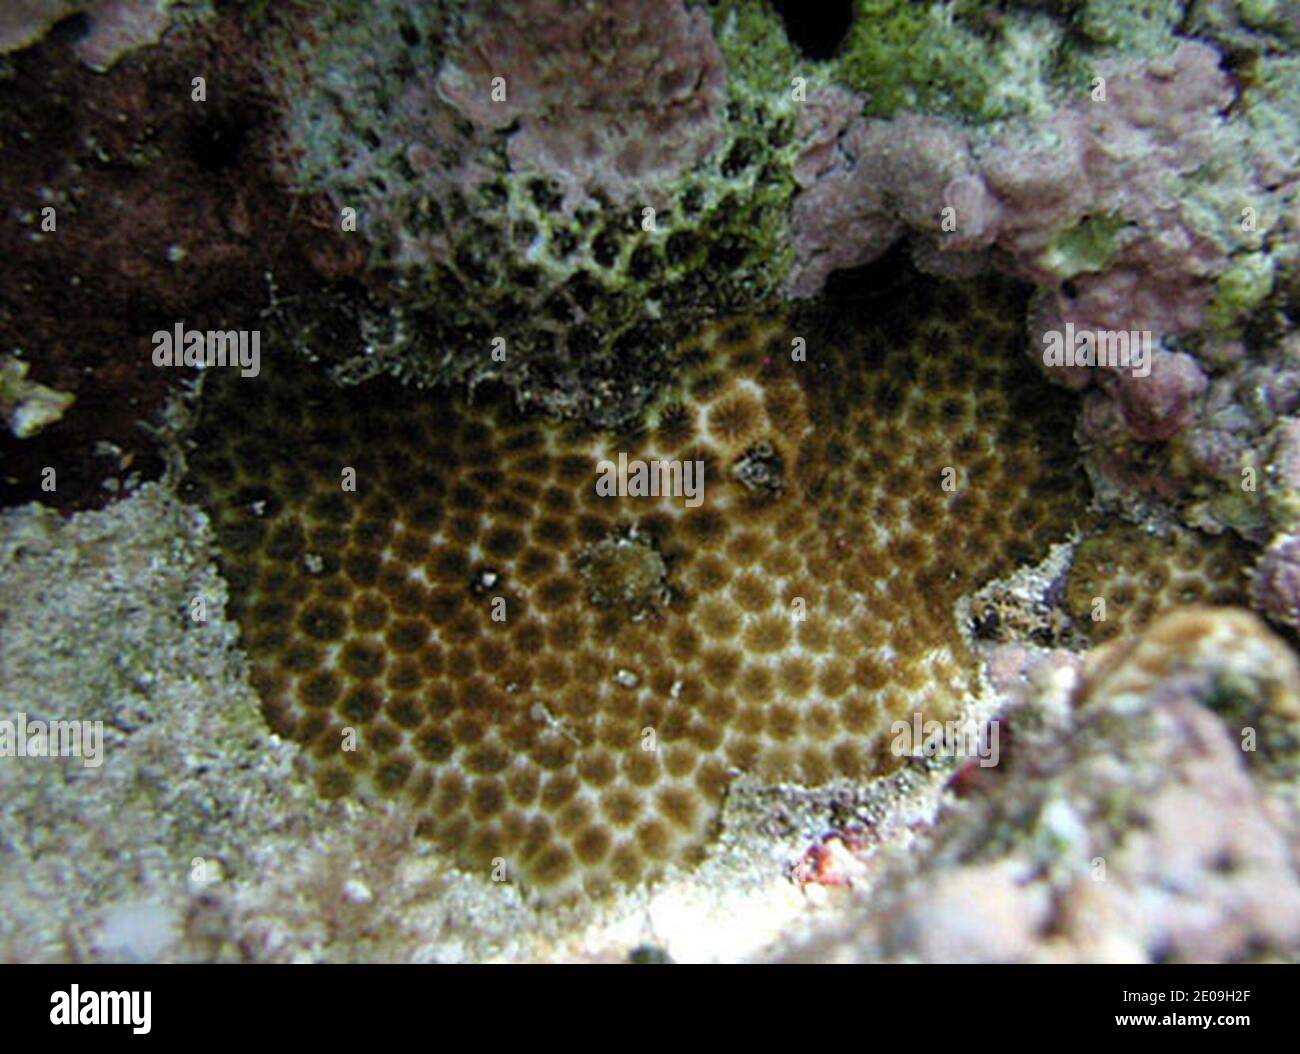 Leptastrea purpurea. Stock Photo